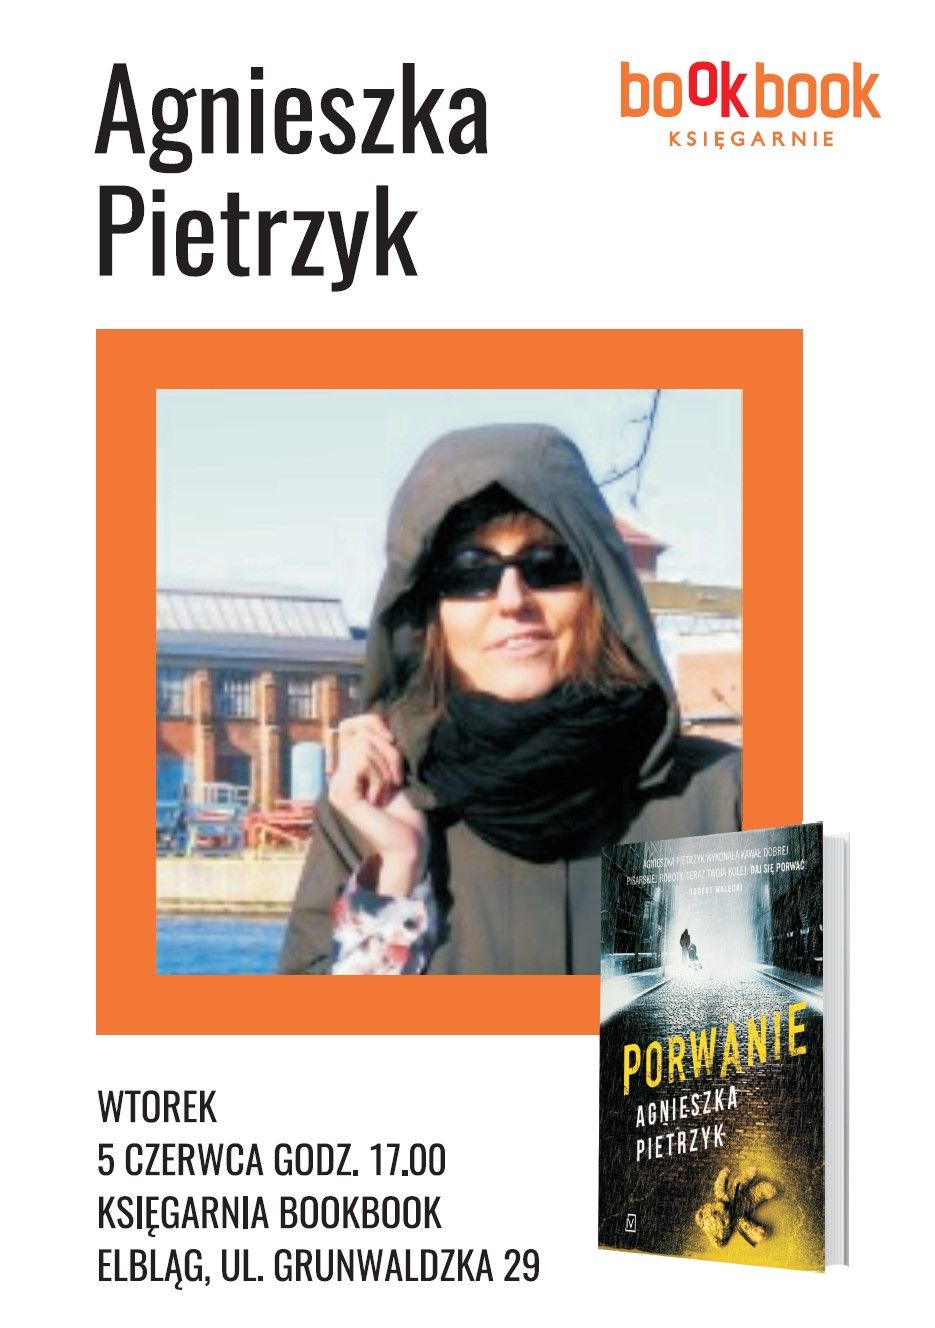 BookBook, Agnieszka Pietrzyk, „Porwanie”, 